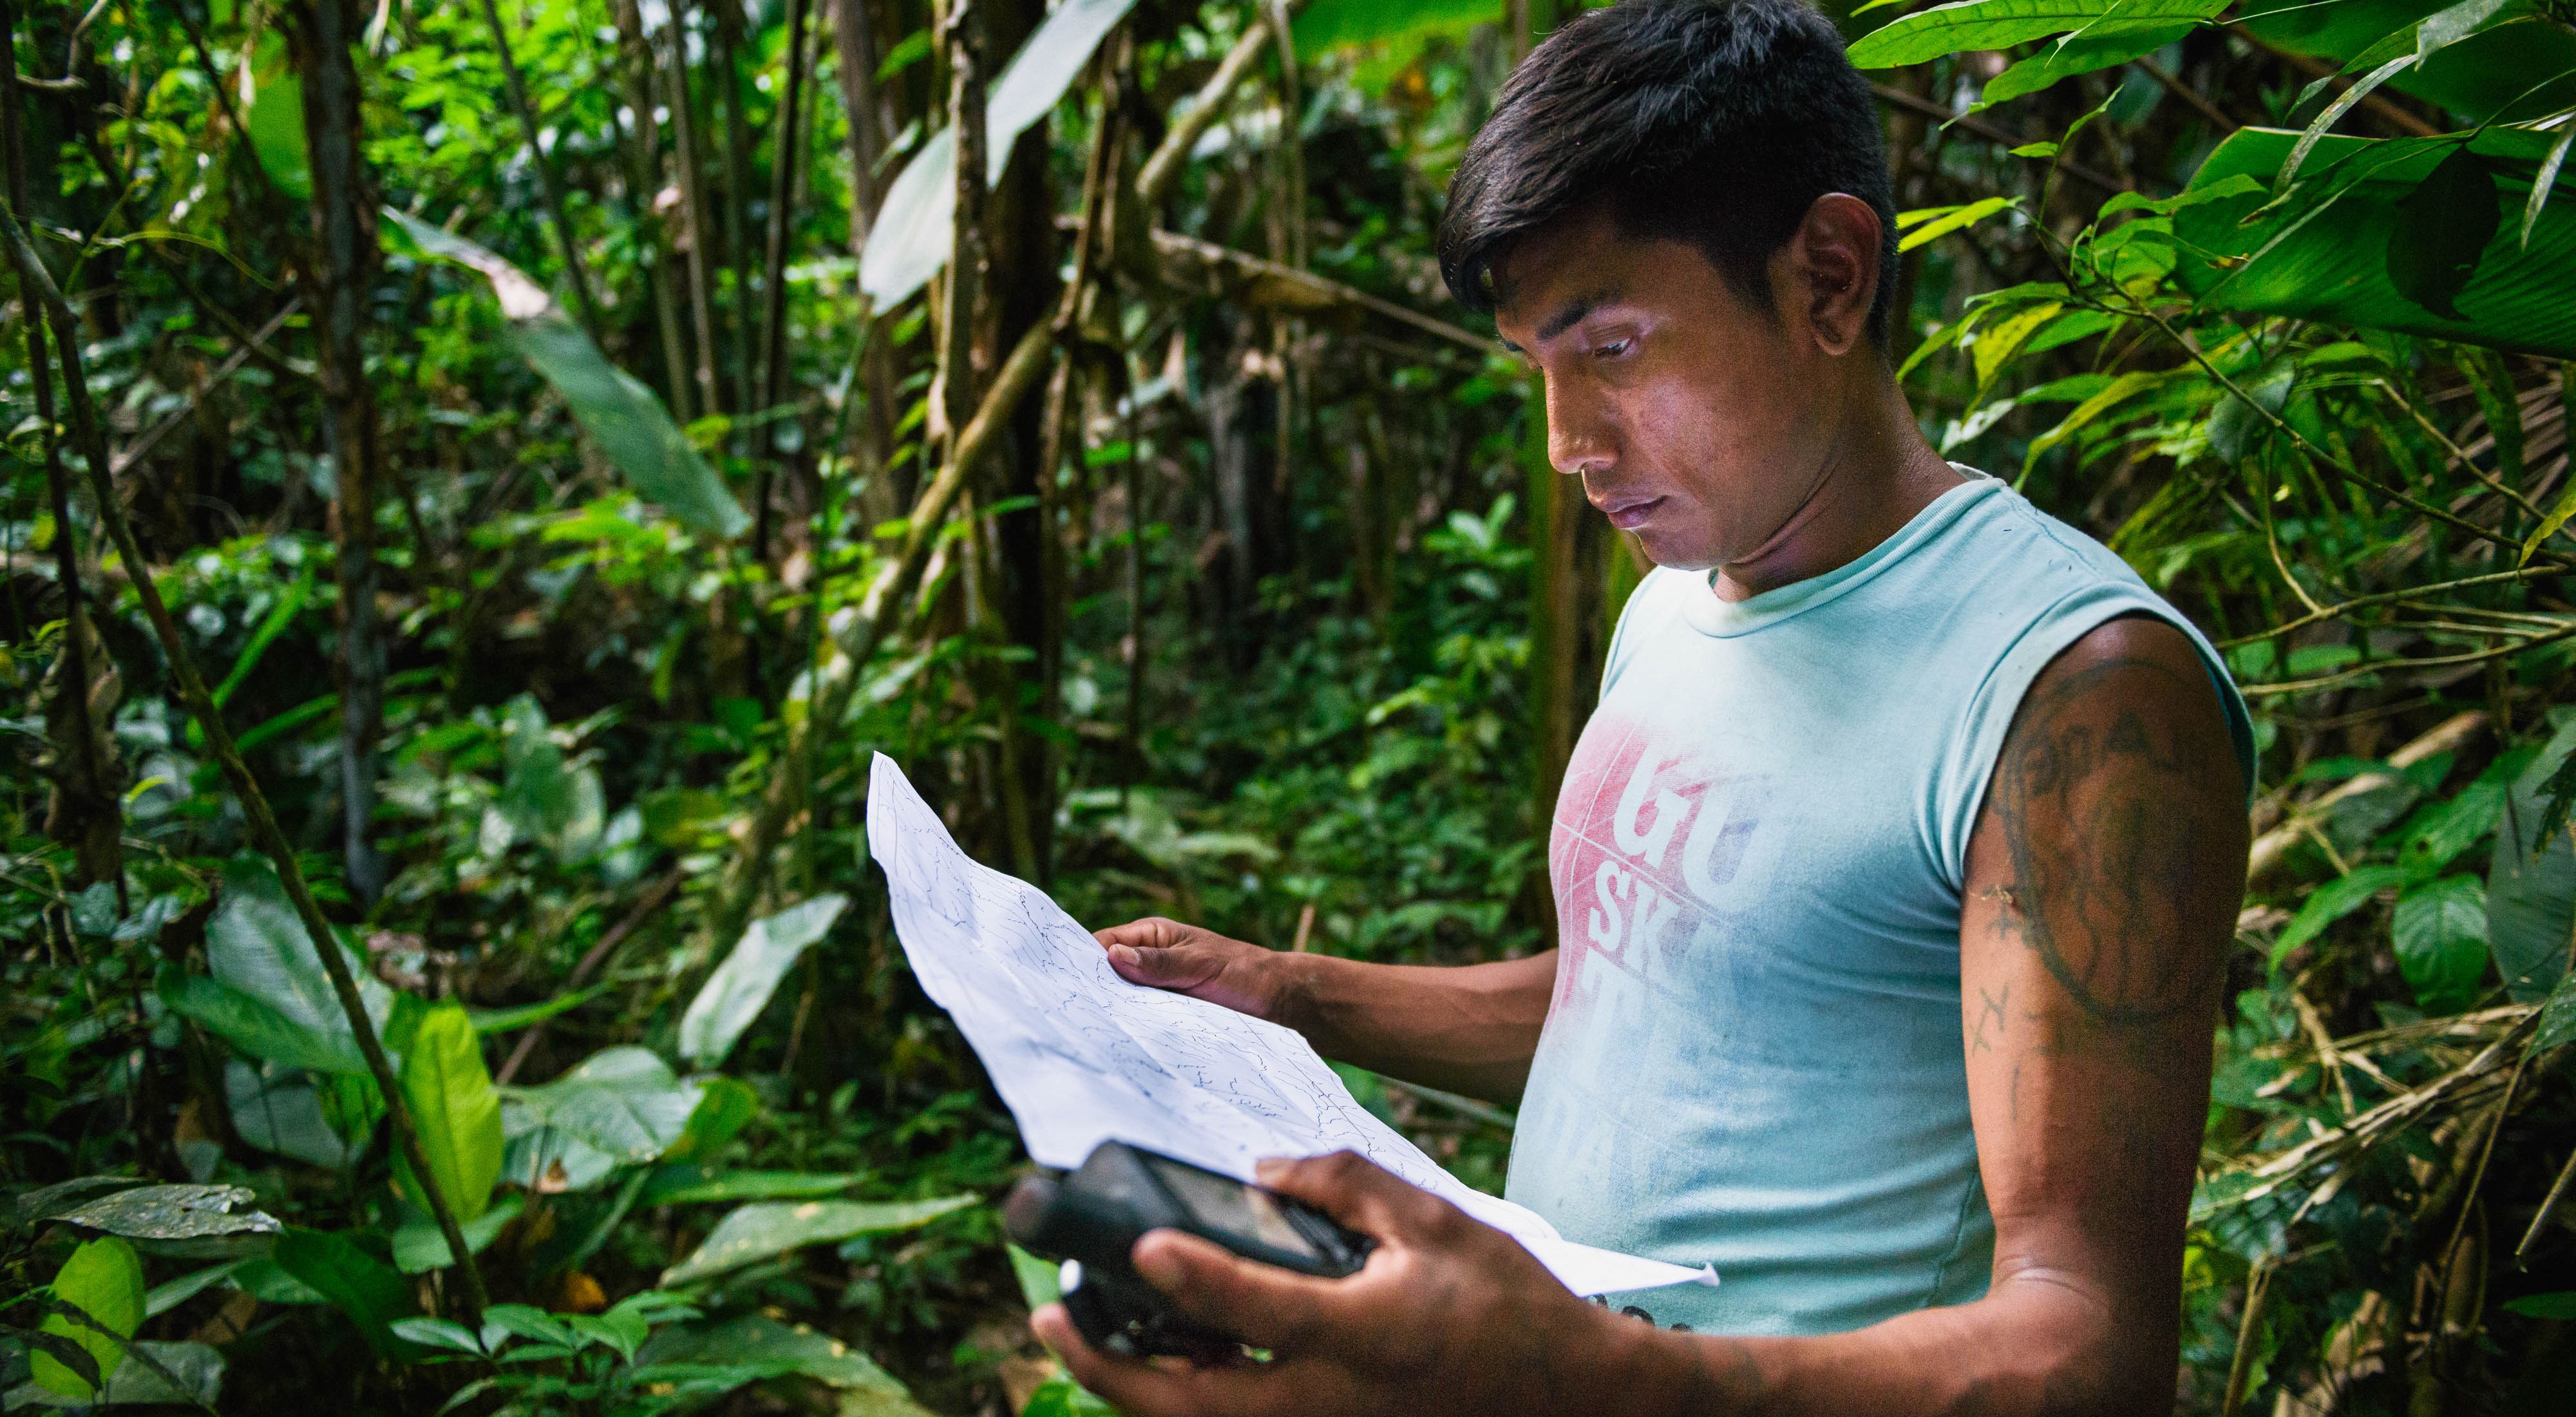 Bepnhibety Xikrin marcando pontos de GPS para o etnomapeamento da Terra Indígena Trincheira-Bacajá, no Pará.